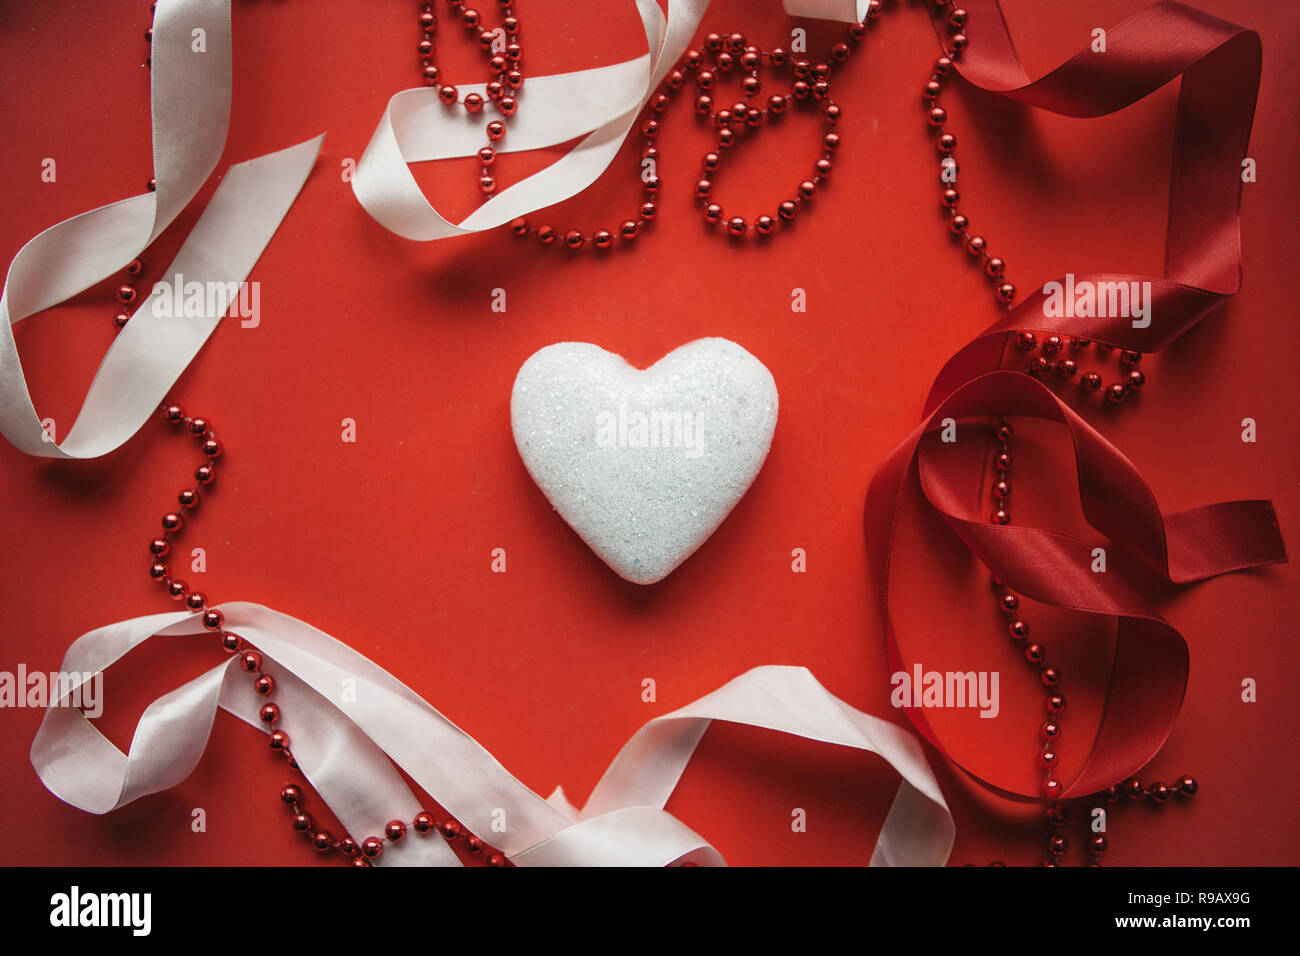 Corazón sobre un fondo rojo festivo decorado con cintas y cordones.  Concepto de Día de San Valentín o el día de la mujer u otro evento de amor  Fotografía de stock -